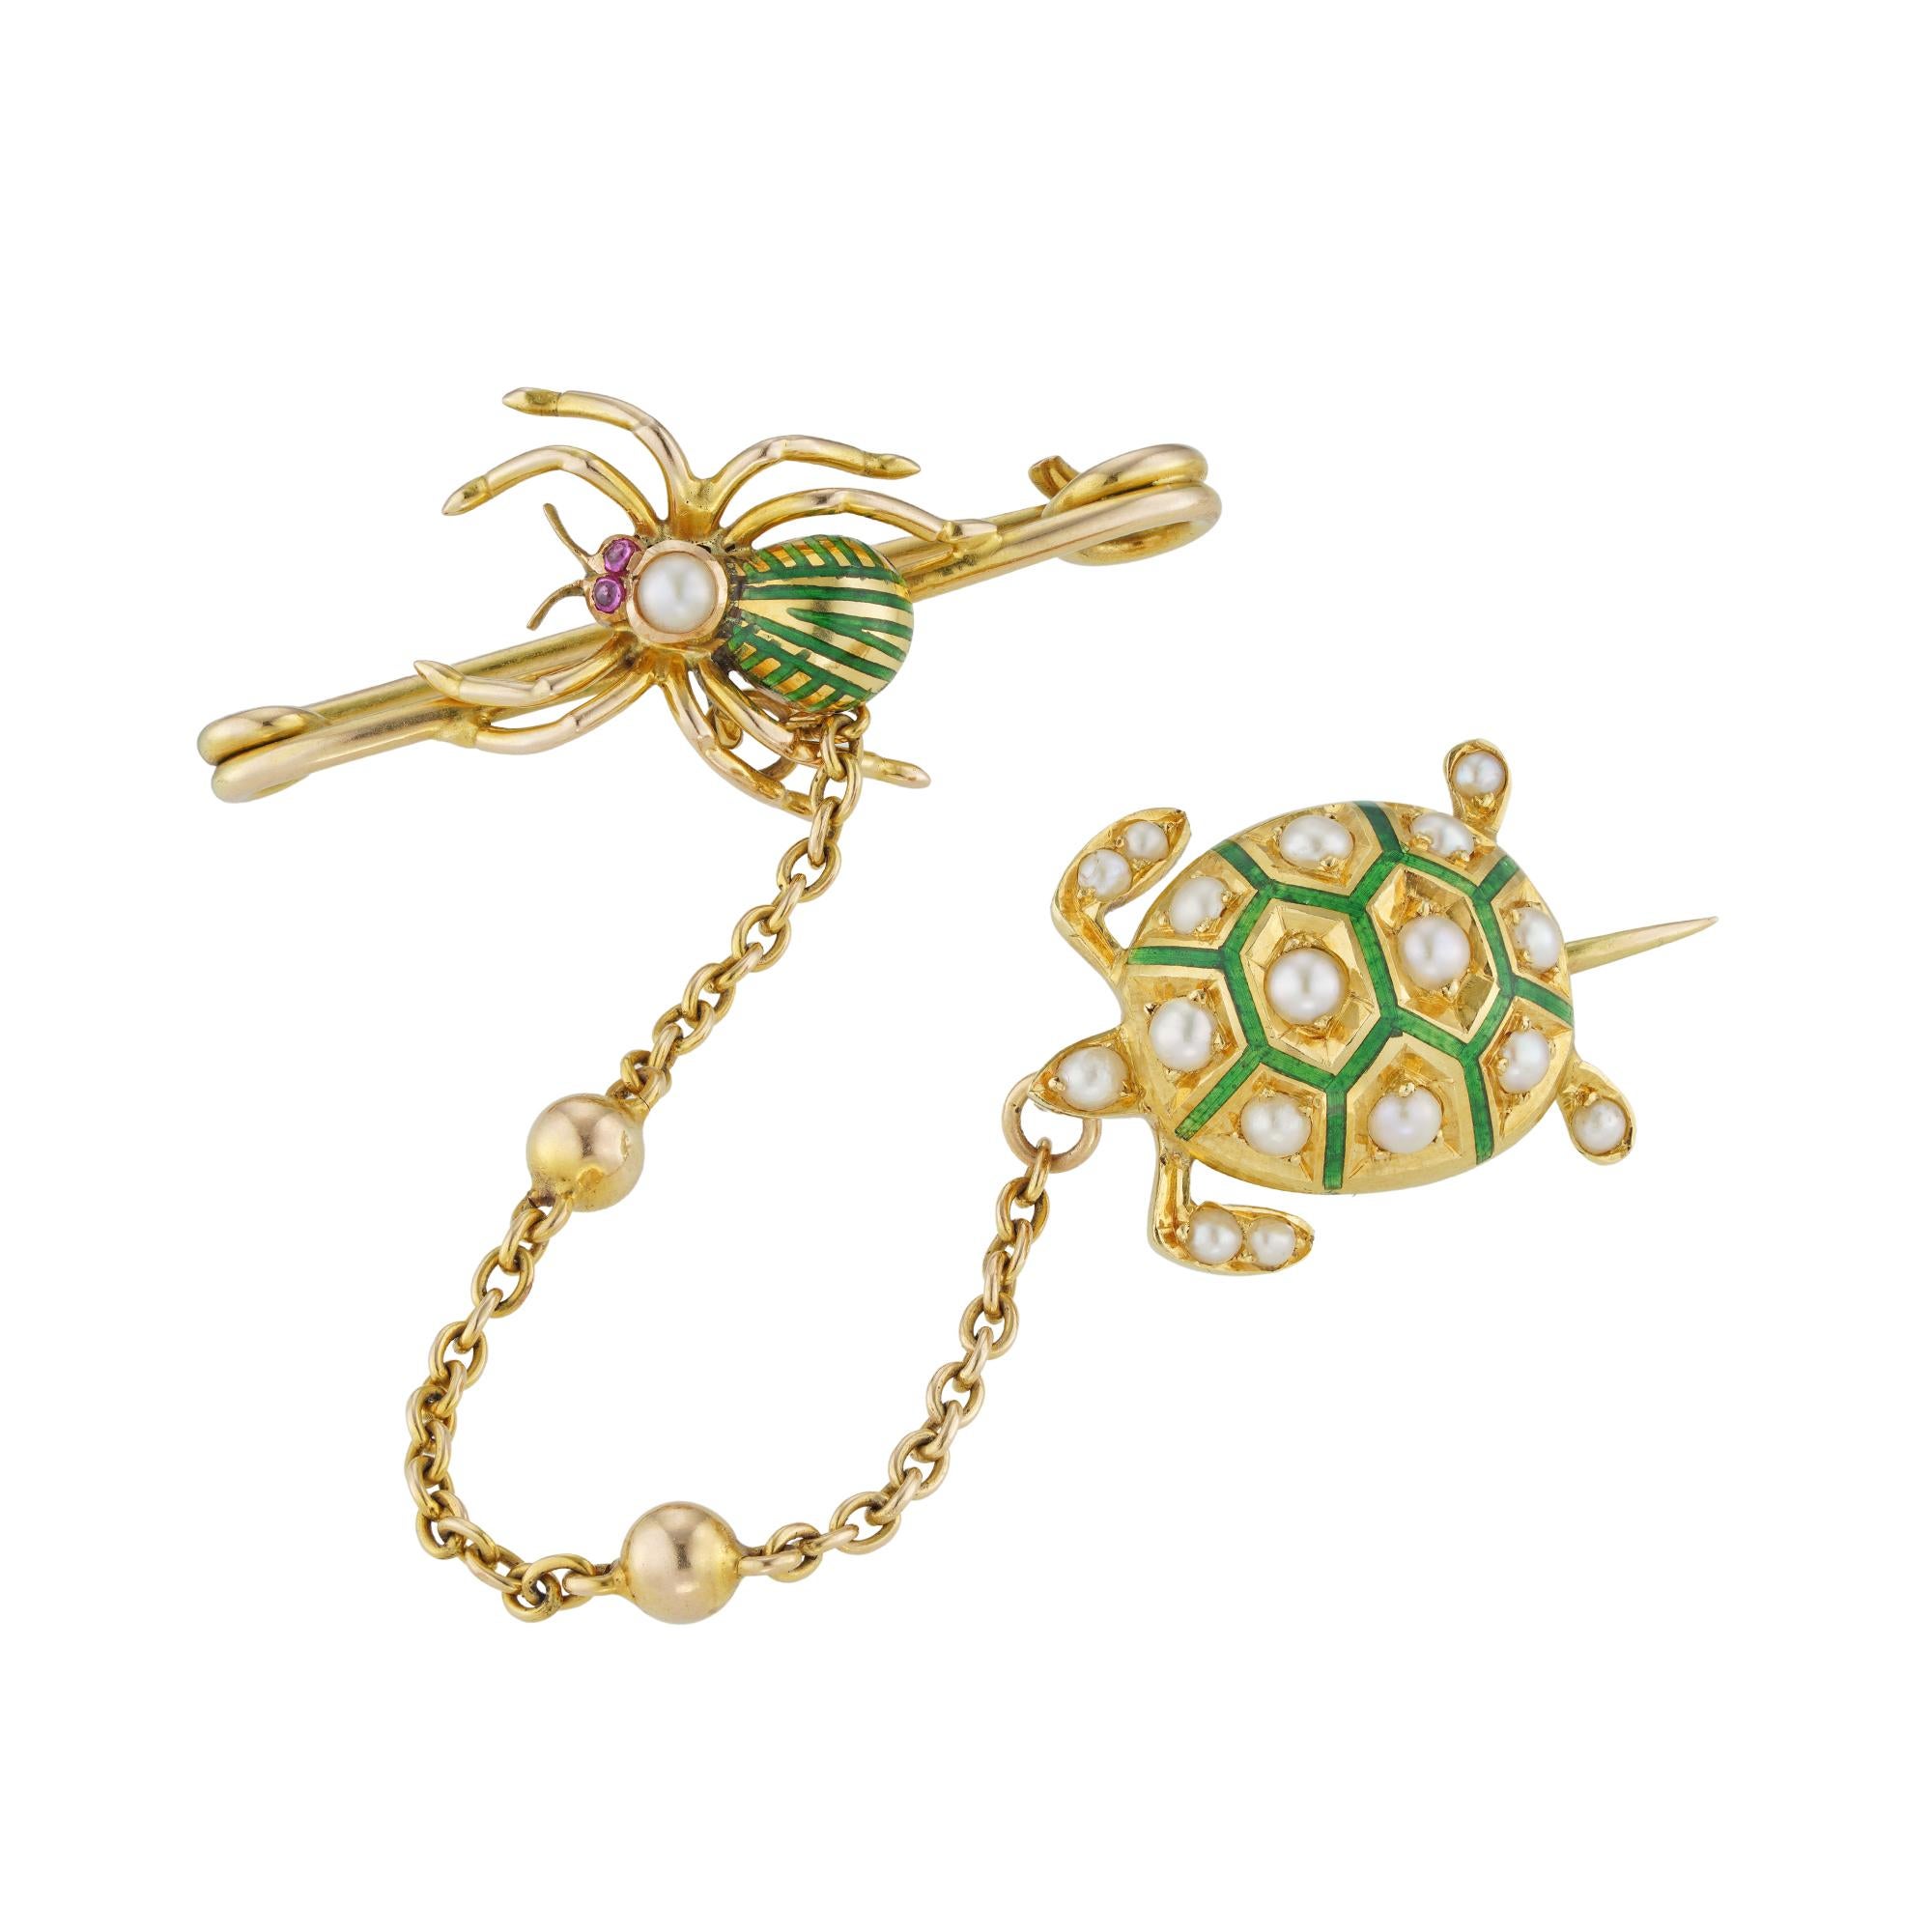 Épingle de fantaisie du début du siècle, composée d'une tortue sertie d'émail vert et de perles, et d'une araignée en émail vert et en perles avec des yeux en rubis taillés en cabochon, le tout en or jaune 18ct et relié par une chaîne ovale, avec